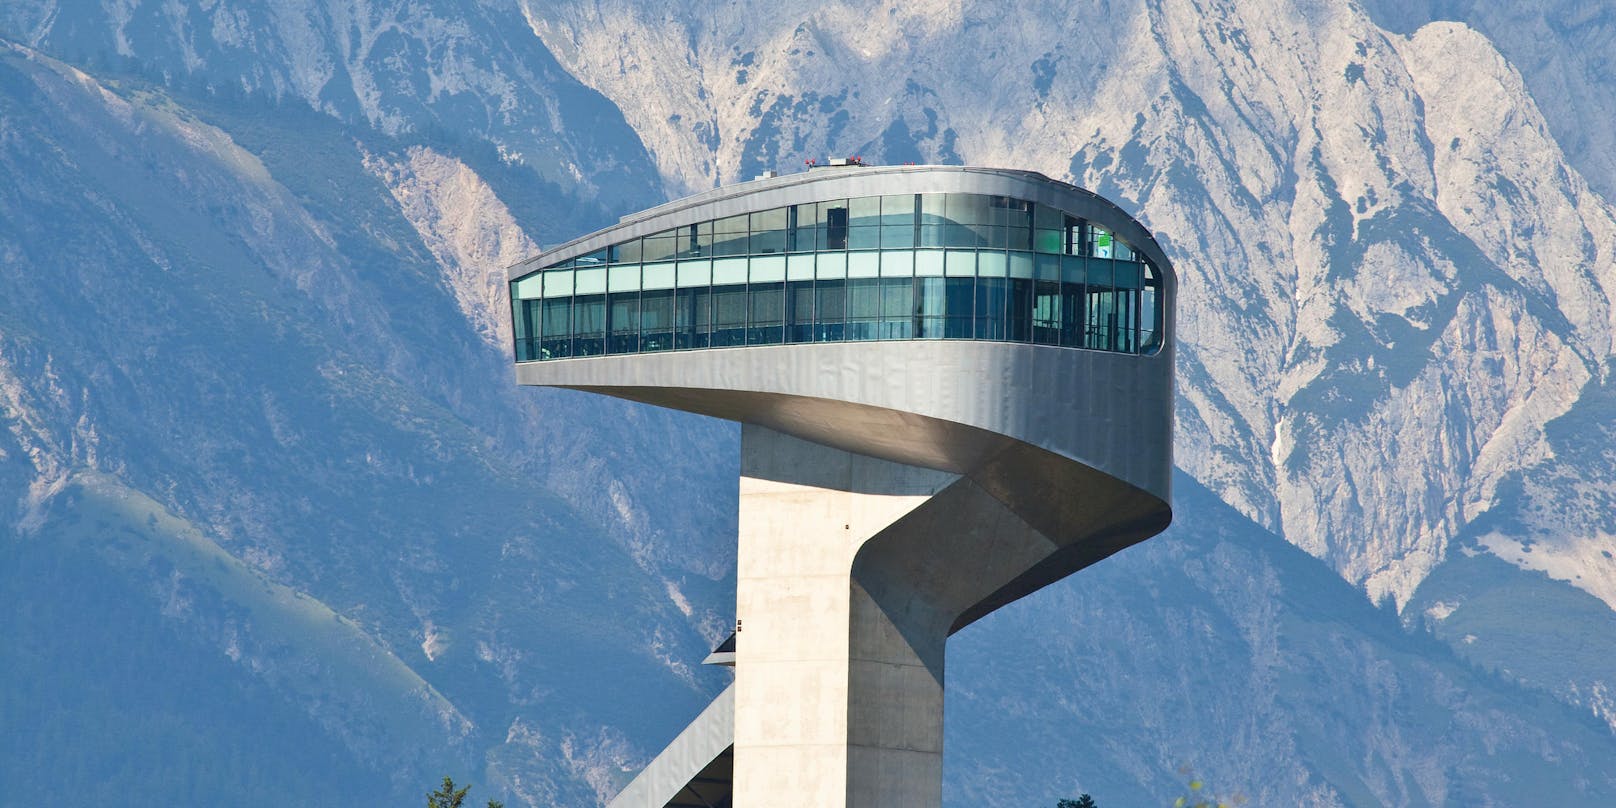 Sightseeing, kulinarische Highlights und moderne Architektur vereint die berühmte Sprungschanze am Bergisel, die von Star-Architektin Zaha Hadid entworfen wurde.